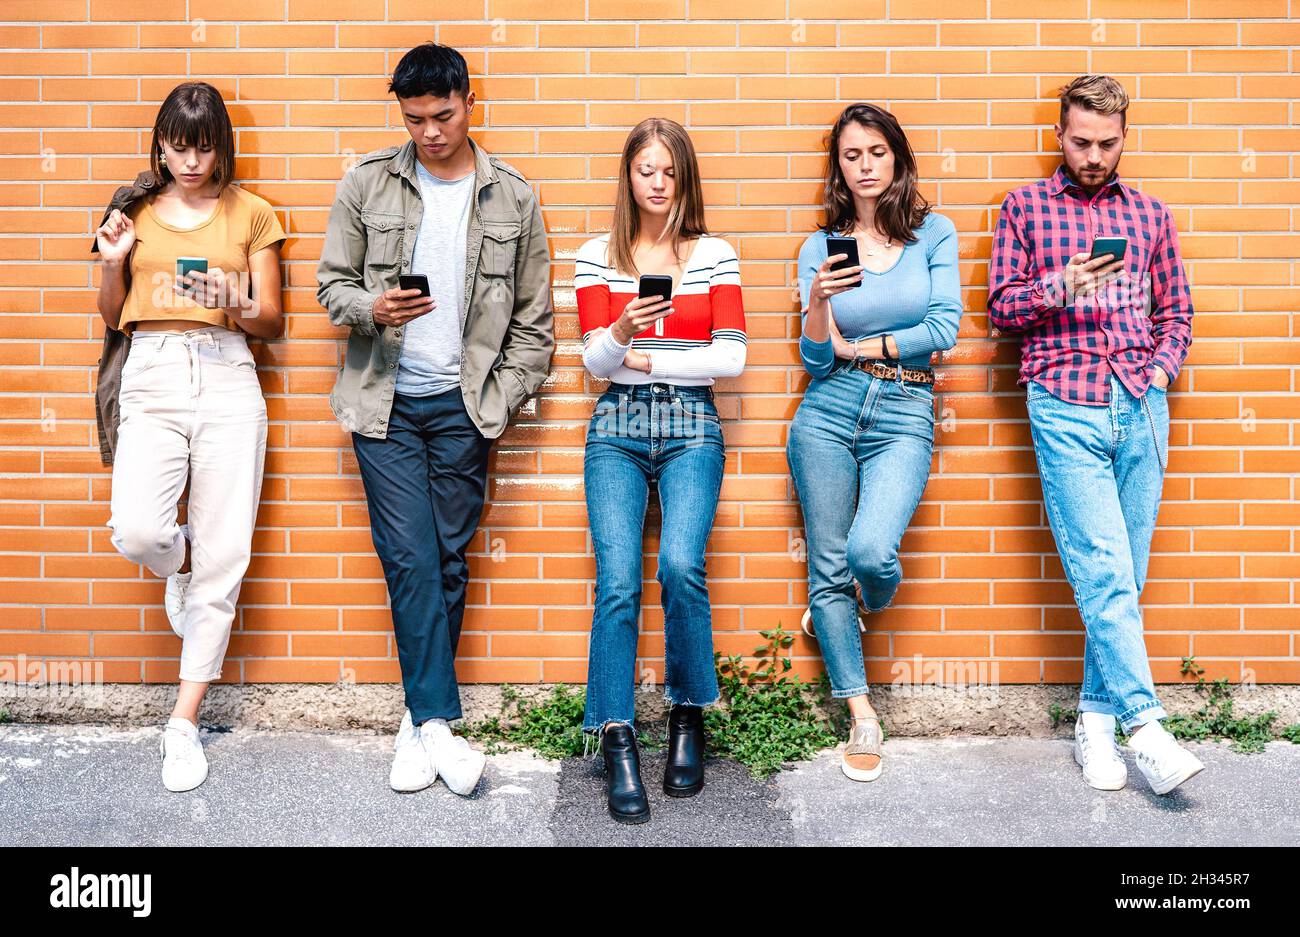 Multikulturelle Menschen Gruppe mit Smartphone an der Universität College Hinterhof - Milenial Freunde süchtig nach Handy - Technologie-Konzept Stockfoto